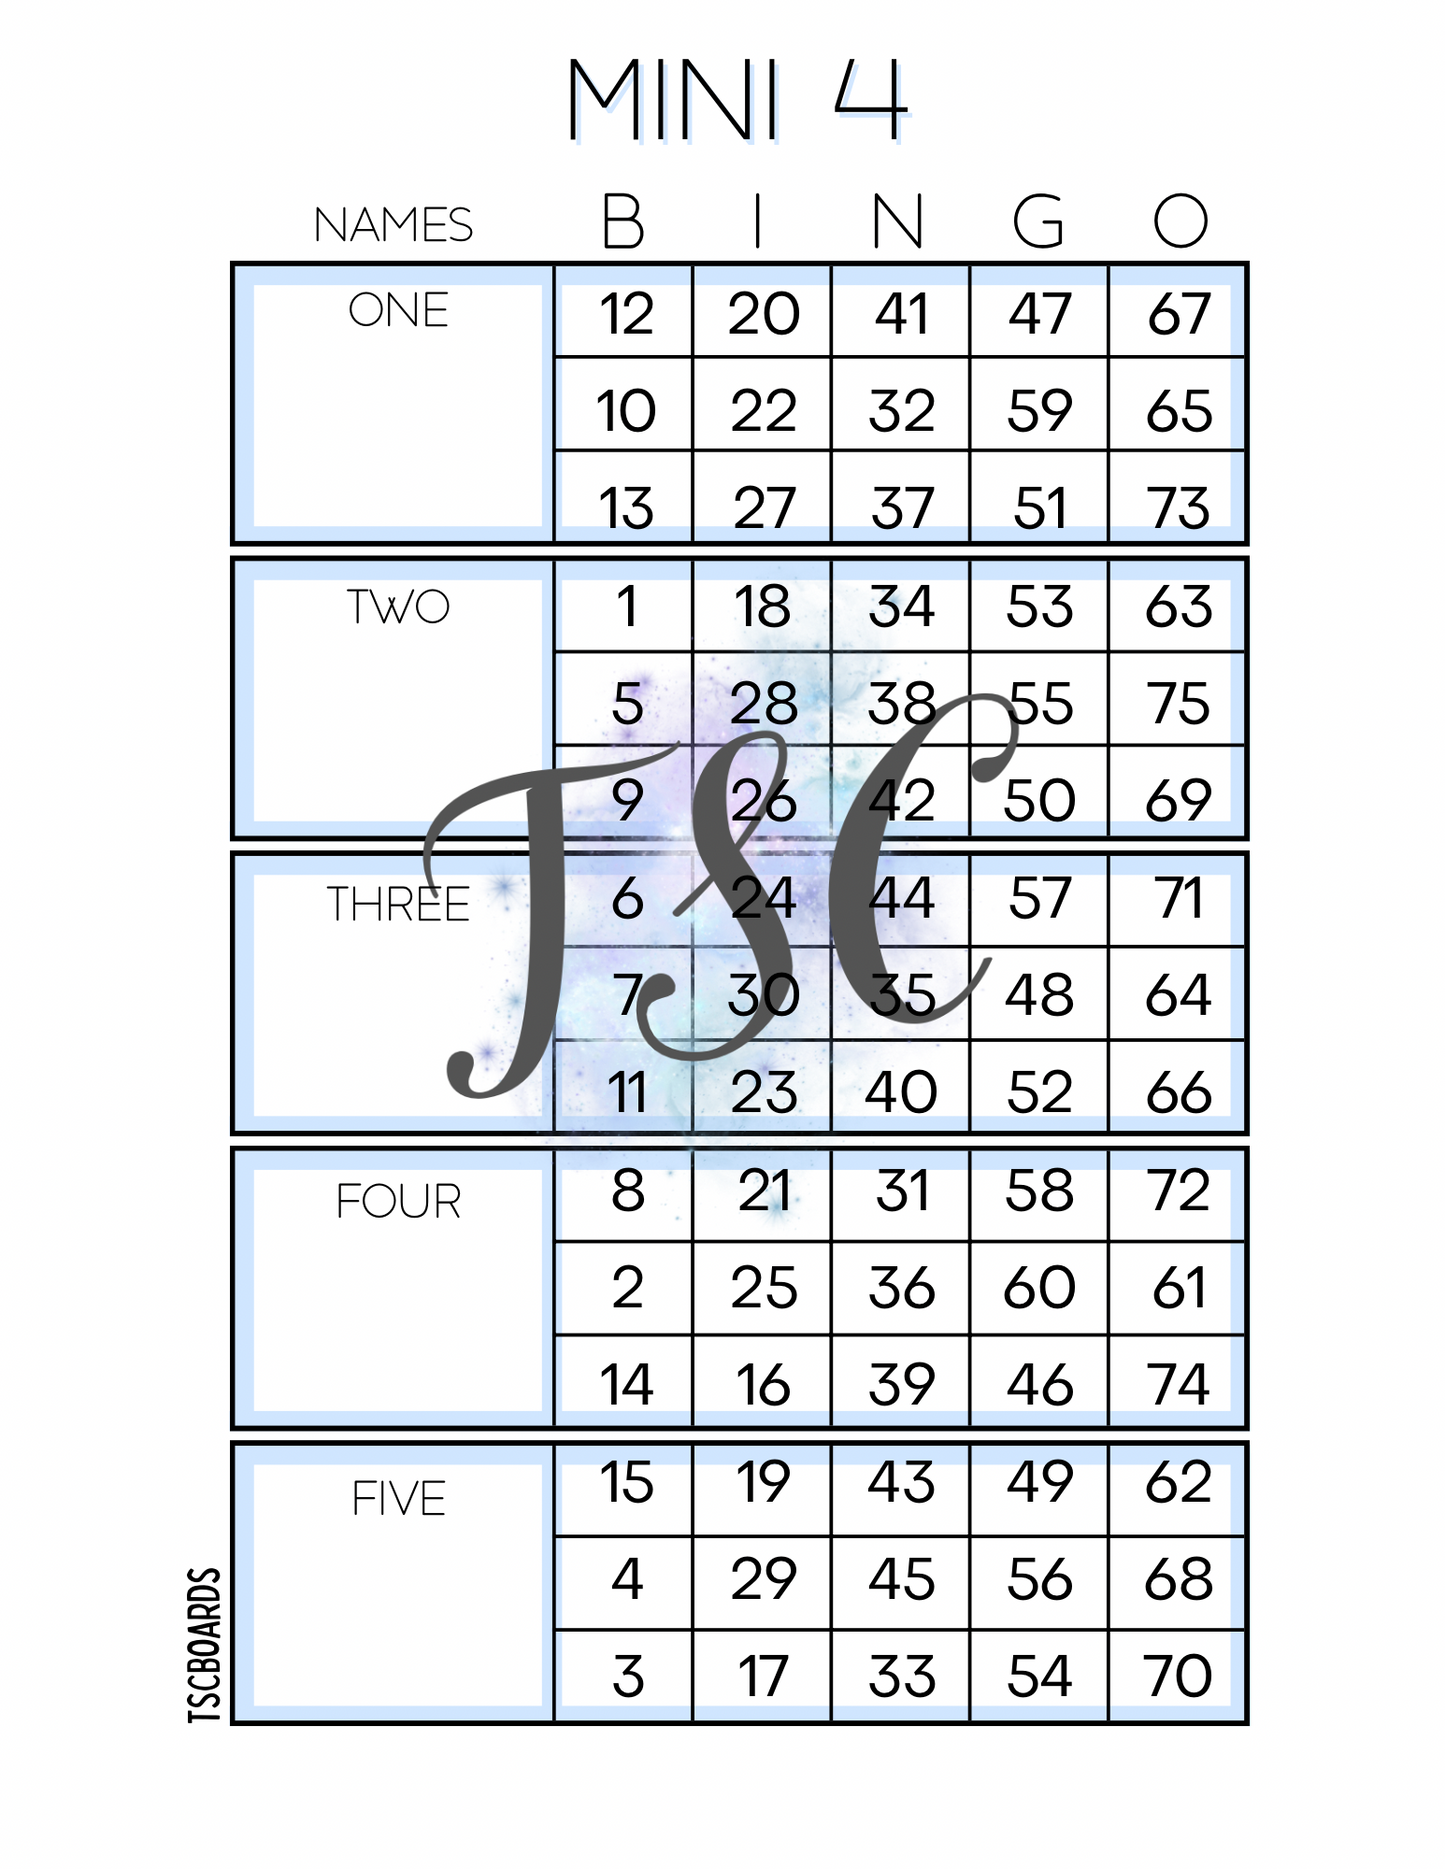 Mini 4 Block Blue and Bingo Board 1-75 Ball